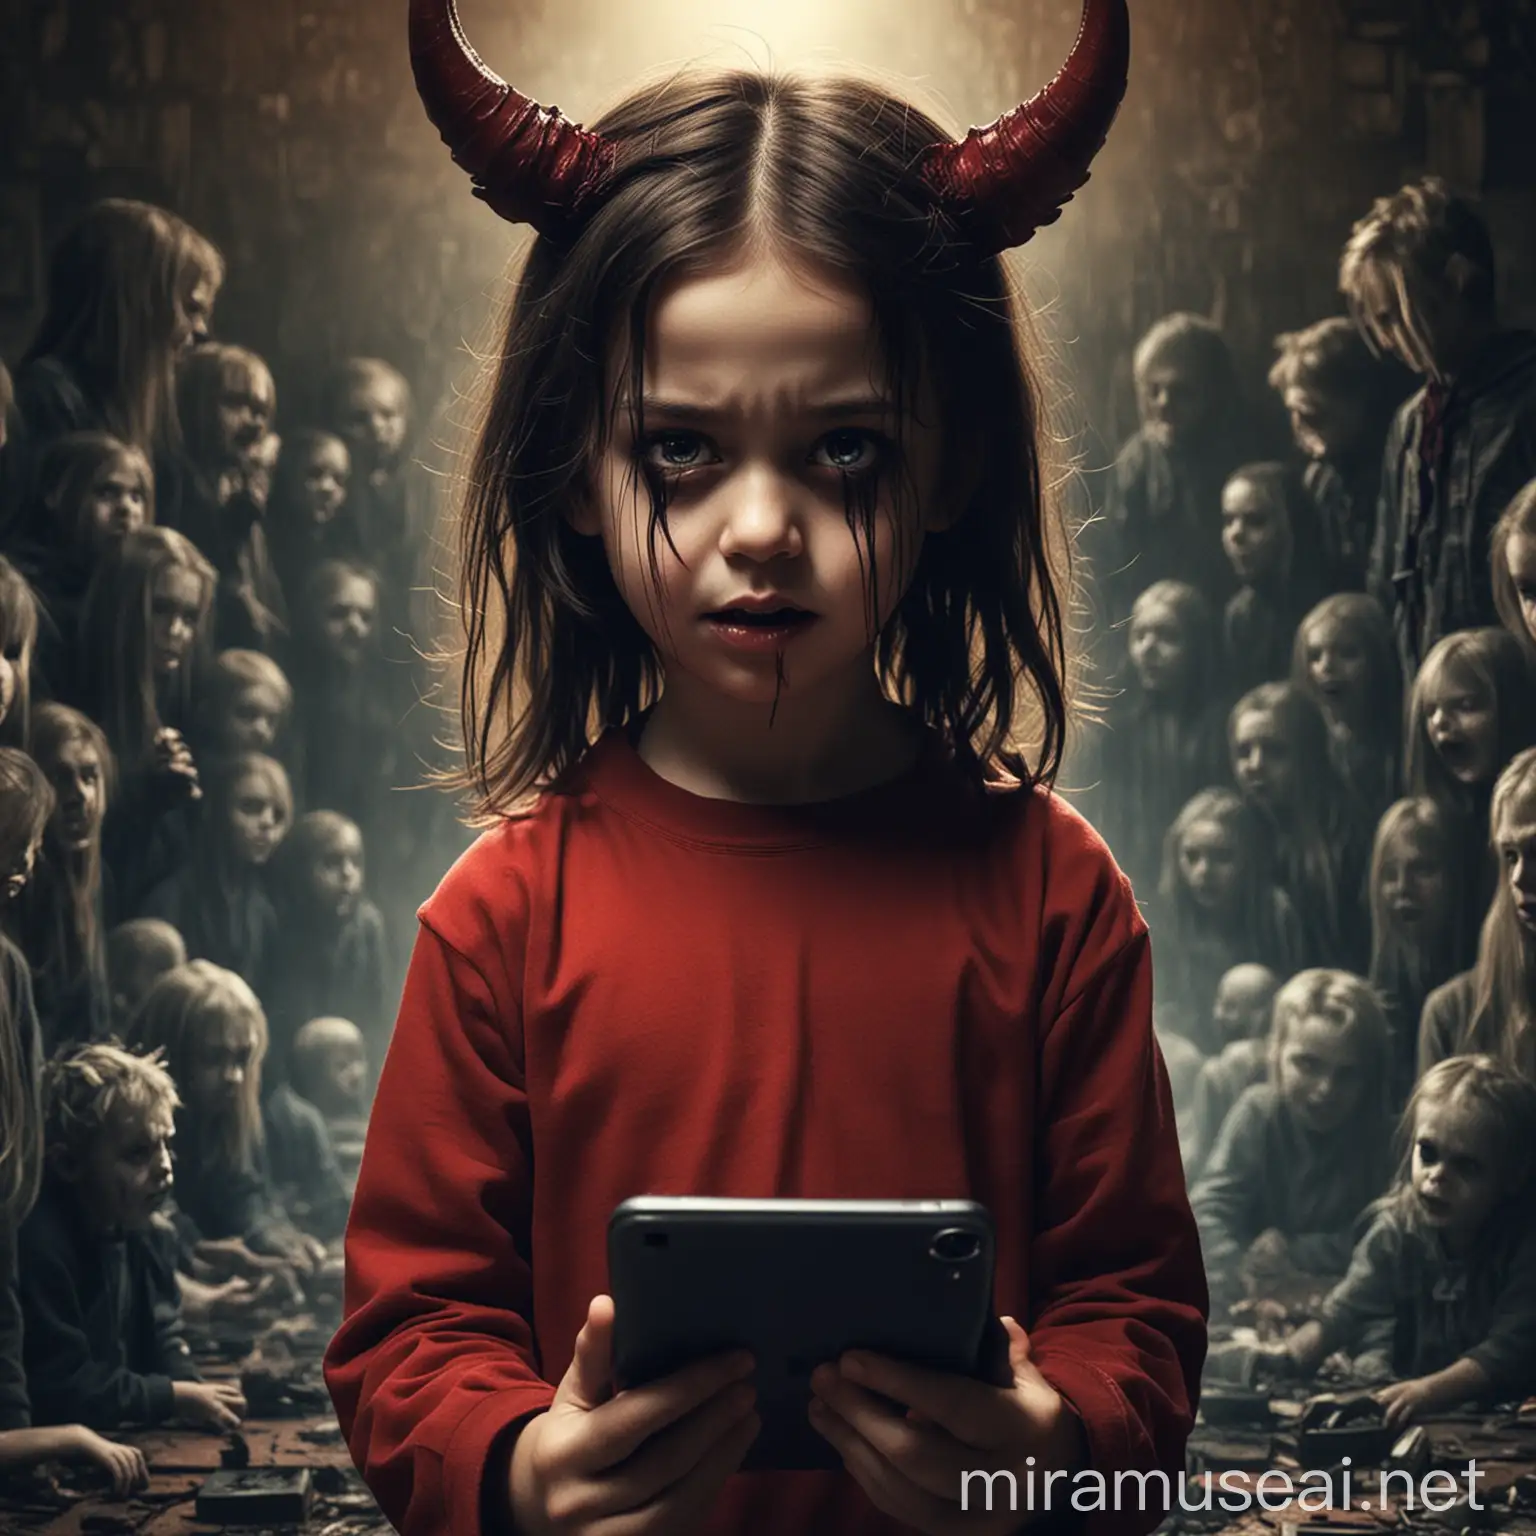 Demonic Influence of Social Media on Children